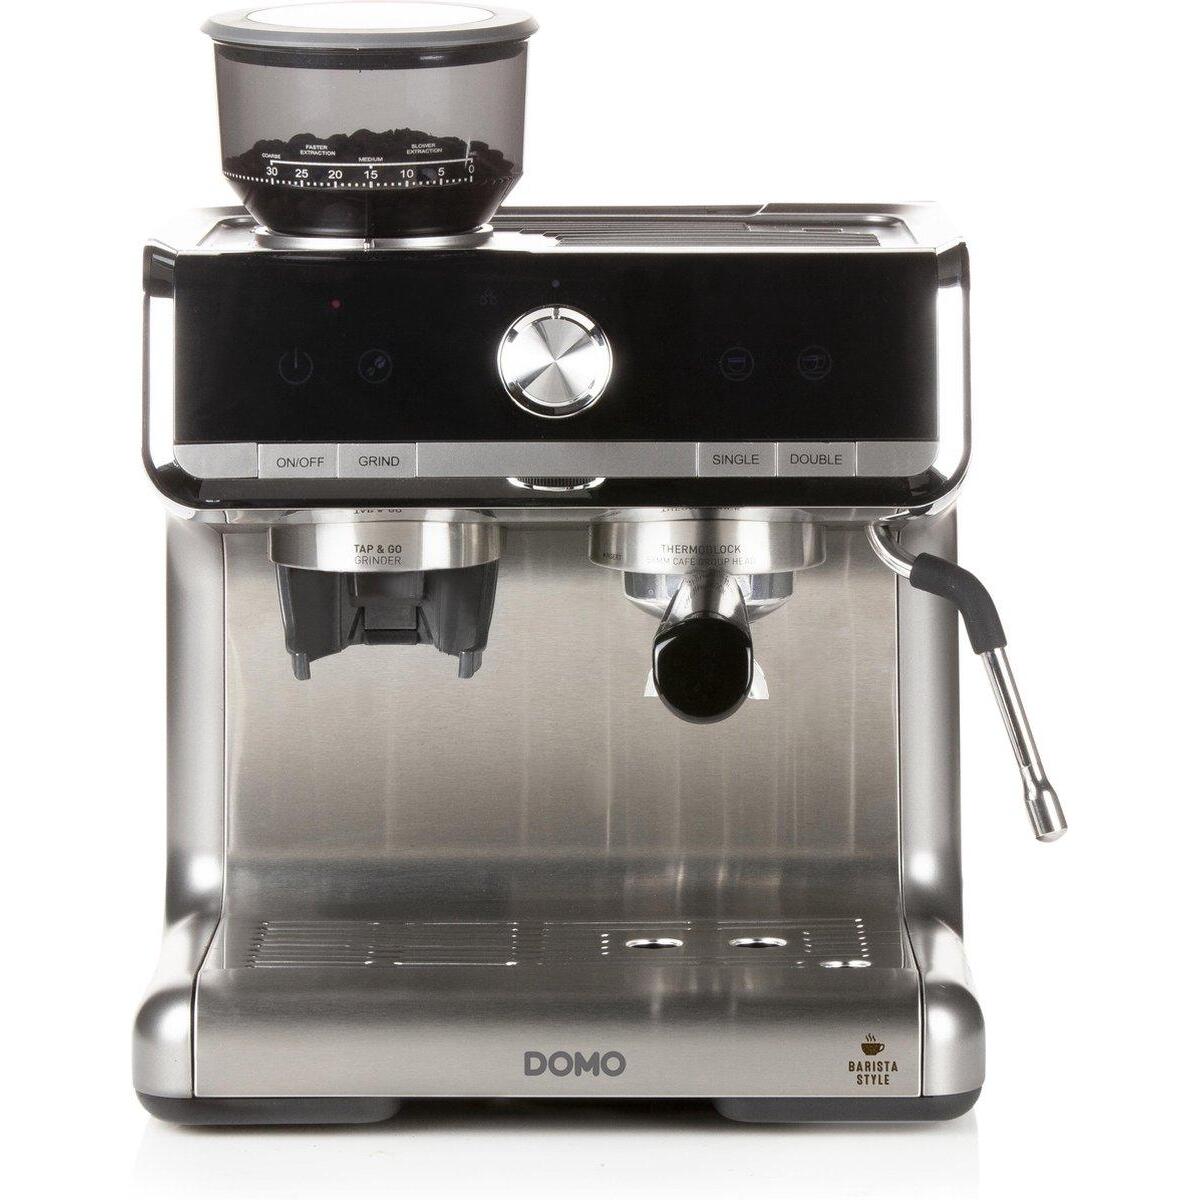 Afstoting veel plezier Herdenkings Espressomachine met Bonenmaler - Domo DO720K kopen - €211